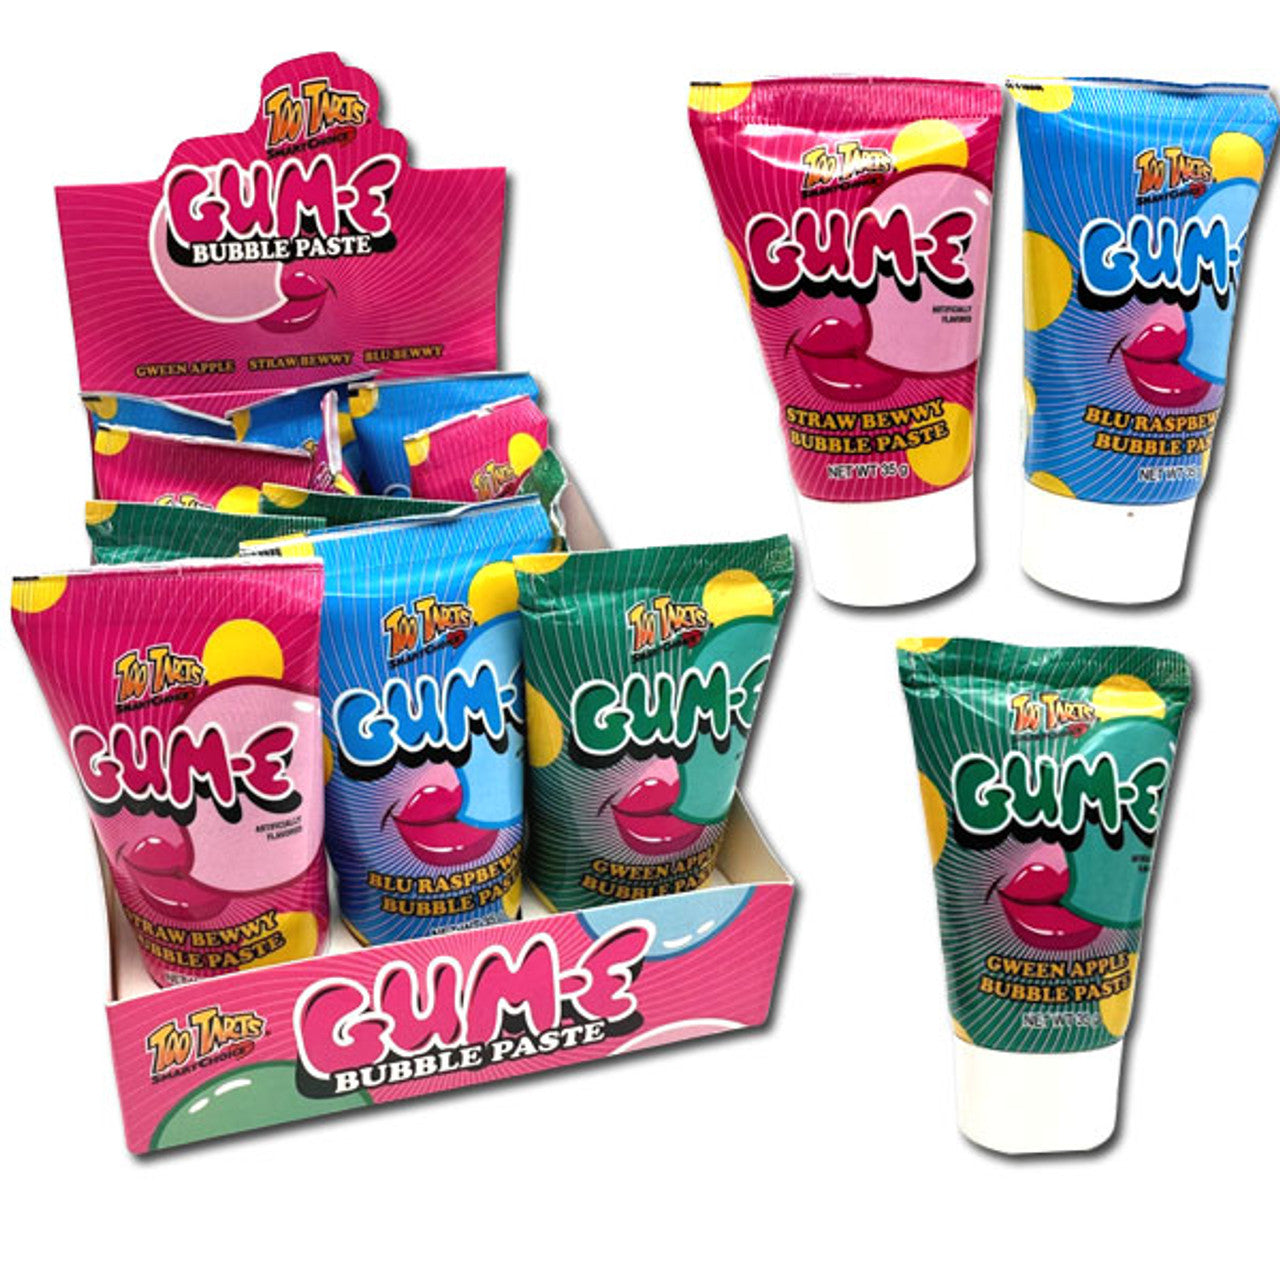 Gum-E Bubble Paste Bubble Gum - 35g